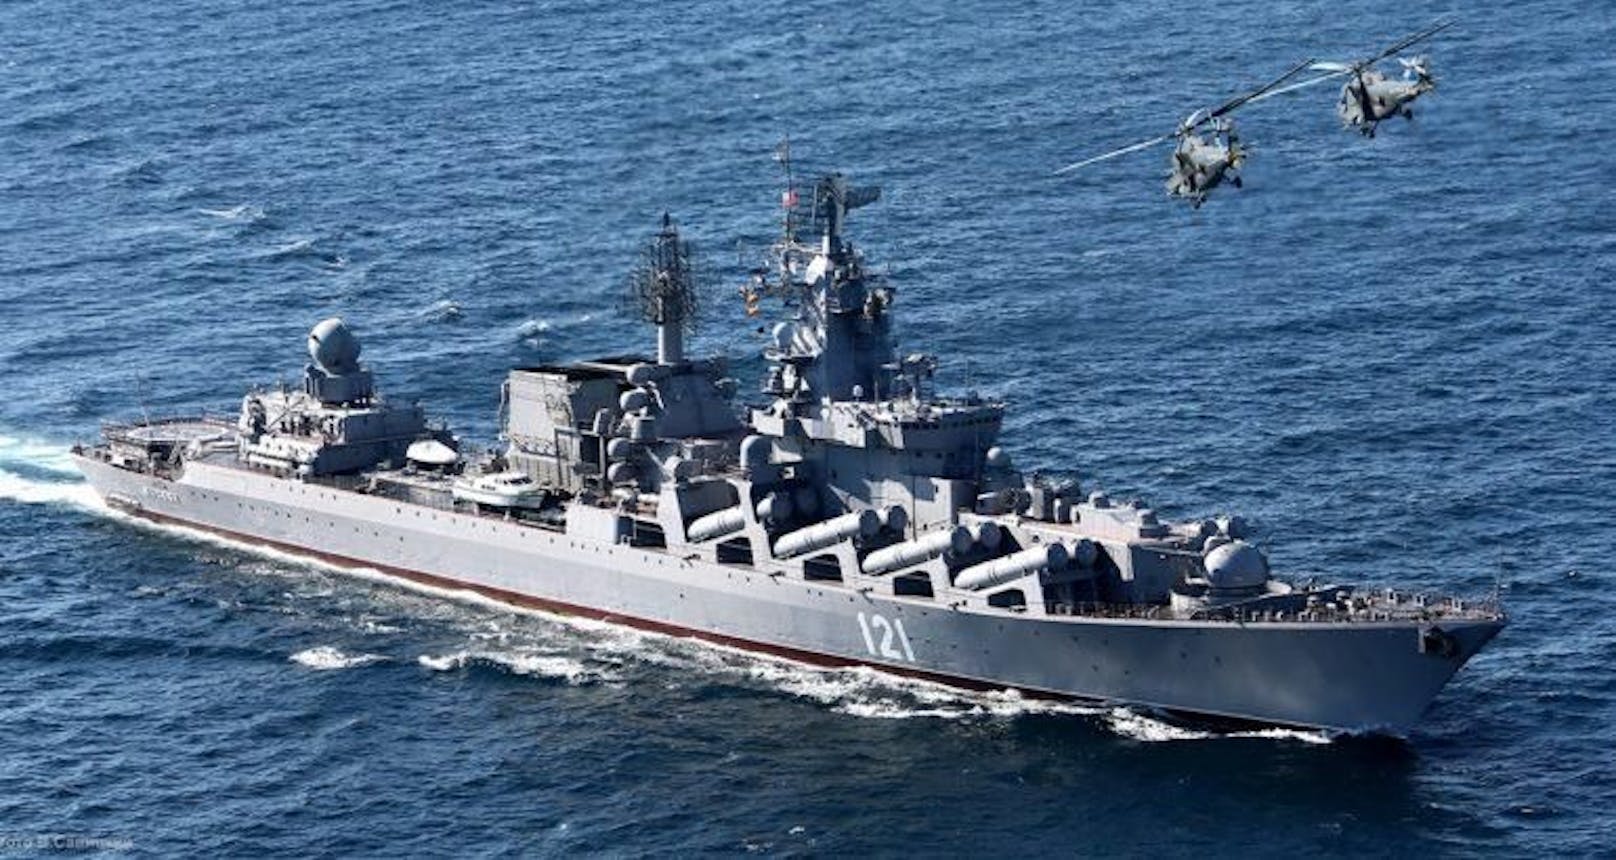 Das russische Flaggschiff "Moskwa" ist beschossen und versenkt worden, sagt die Ukraine.   Es gab einen verheerenden Brand an Bord des Schiffes, sagt Russland. 